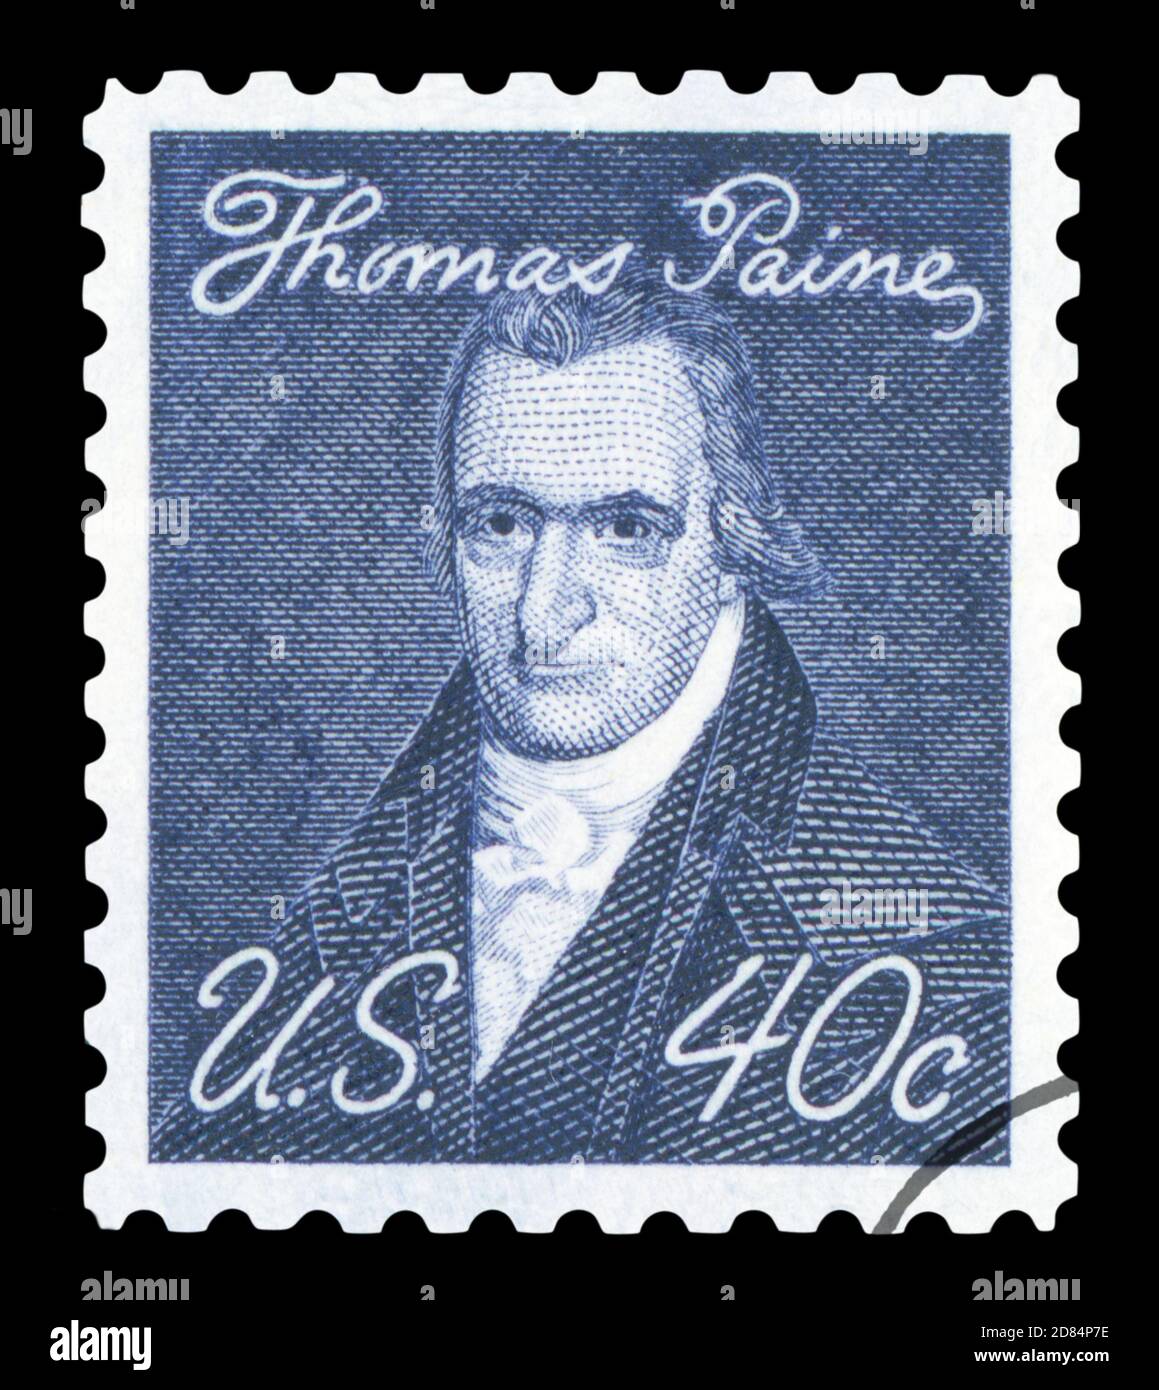 ETATS-UNIS D'AMÉRIQUE - VERS 1965: Un timbre imprimé aux Etats-Unis montre Thomas Paine - auteur anglais, pamphleteer, radical, inventeur, intellectuel, r Banque D'Images